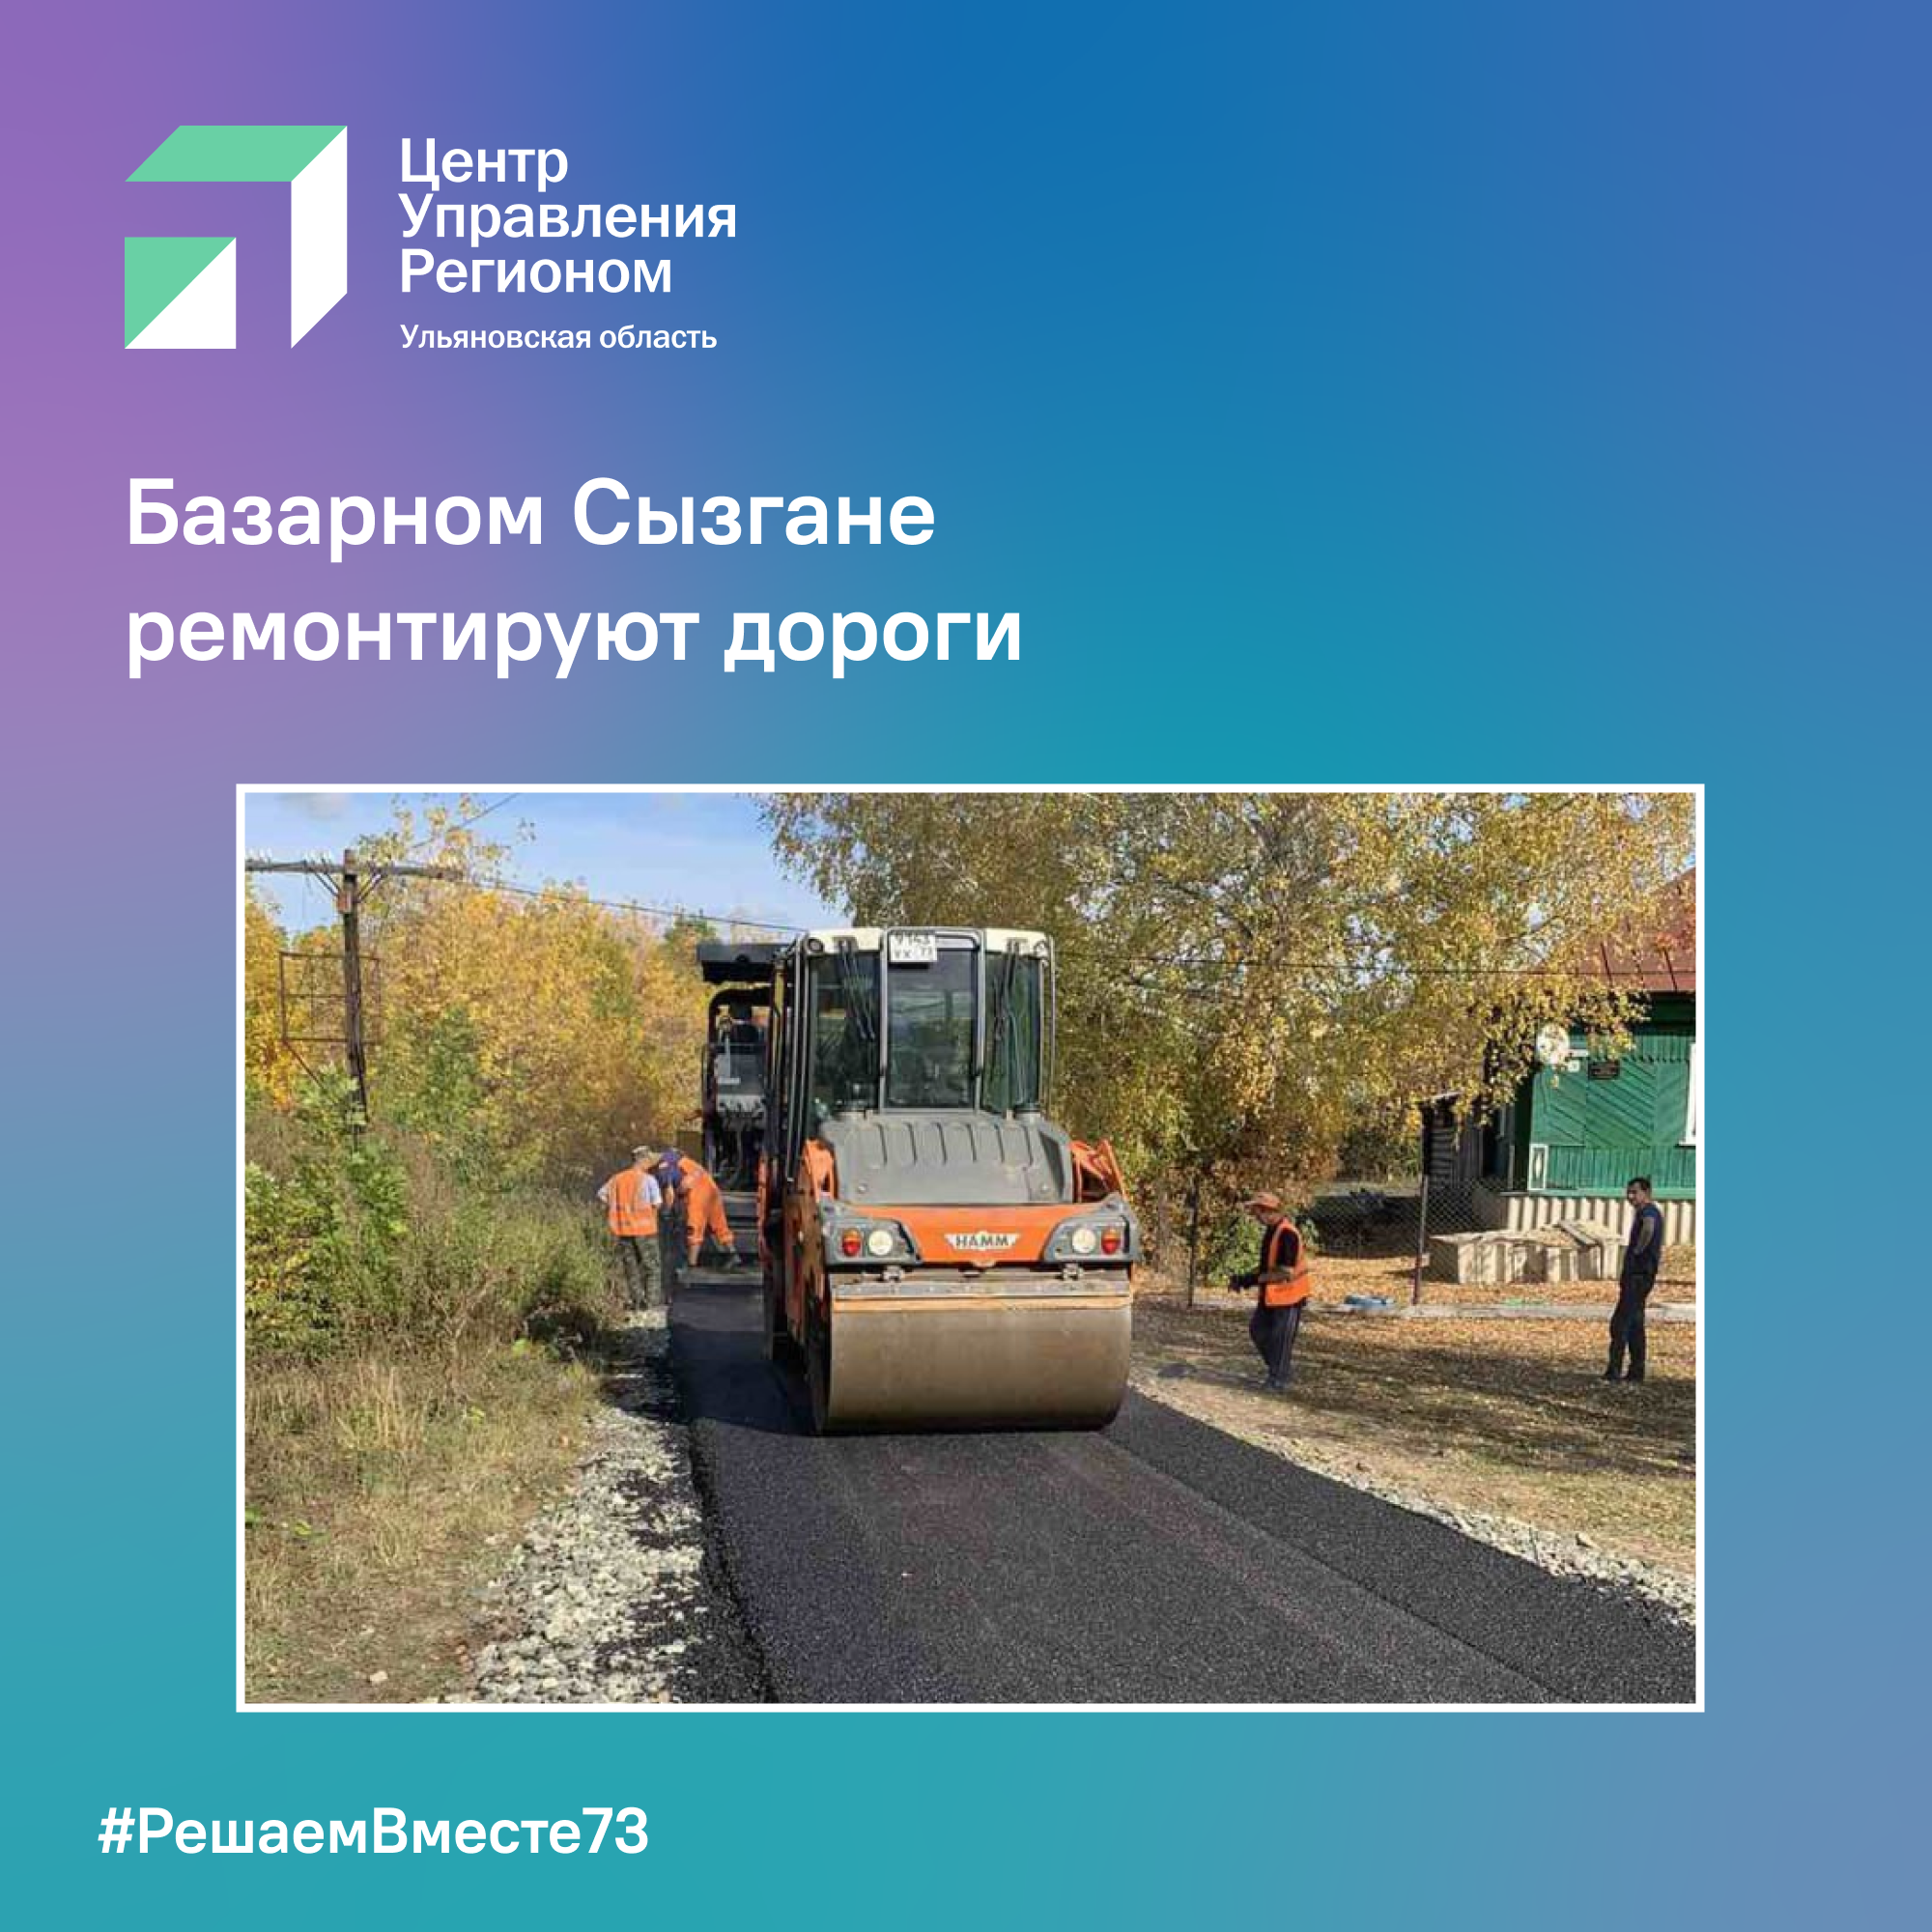 В Базарном Сызгане ремонтируют дороги.